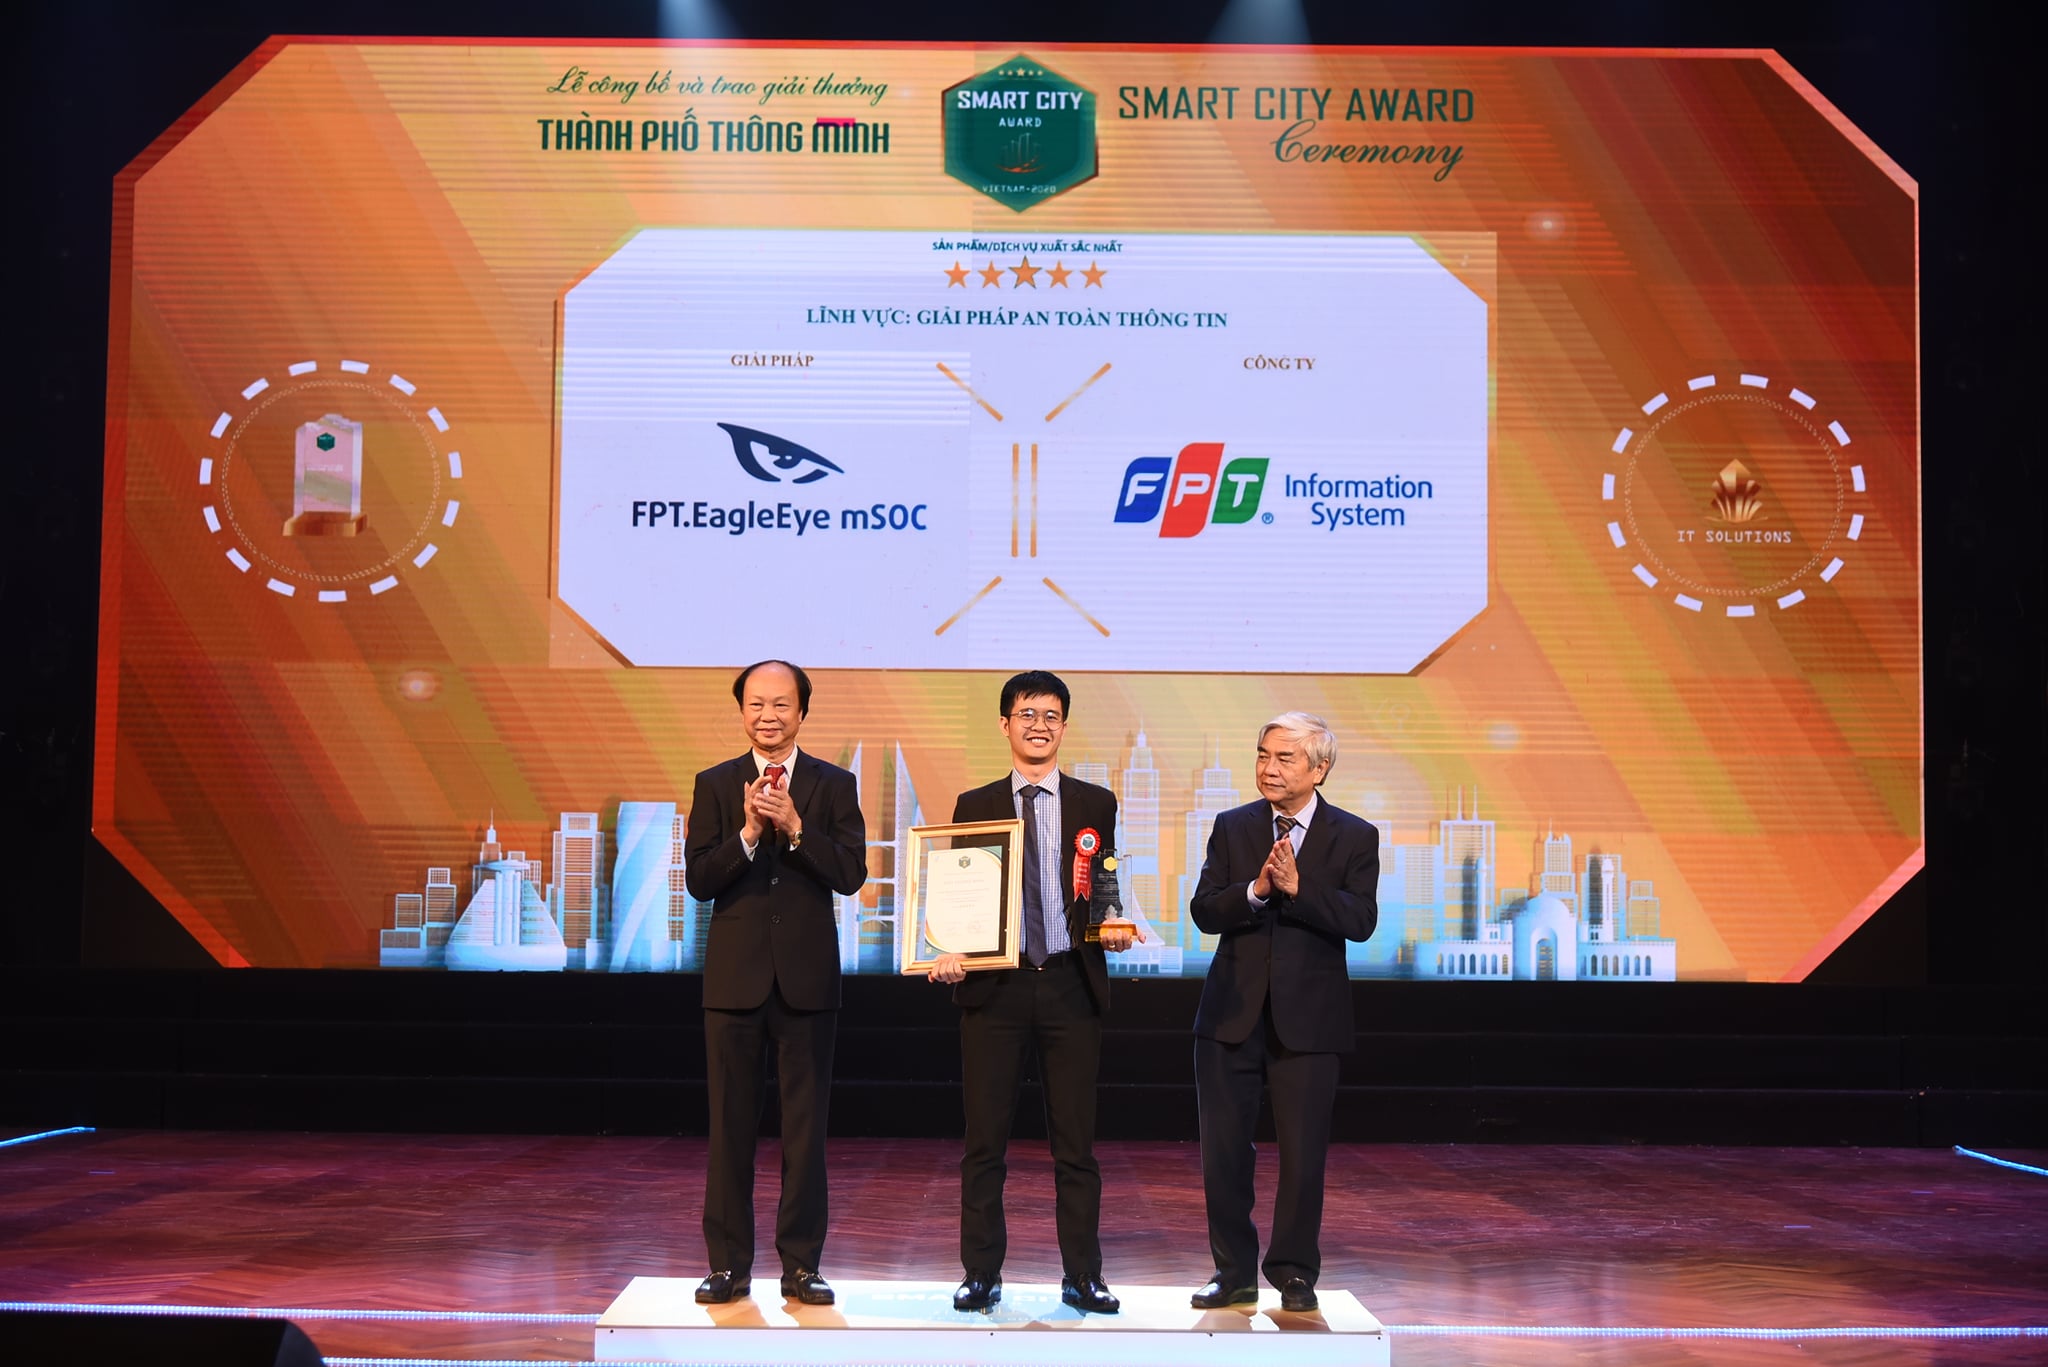 Nền tảng điều hành an ninh mạng tập trung FPT.EagleEye mSOC đạt Giải thưởng Thành phố thông minh Việt Nam 2020 (xếp hạng 5 sao)